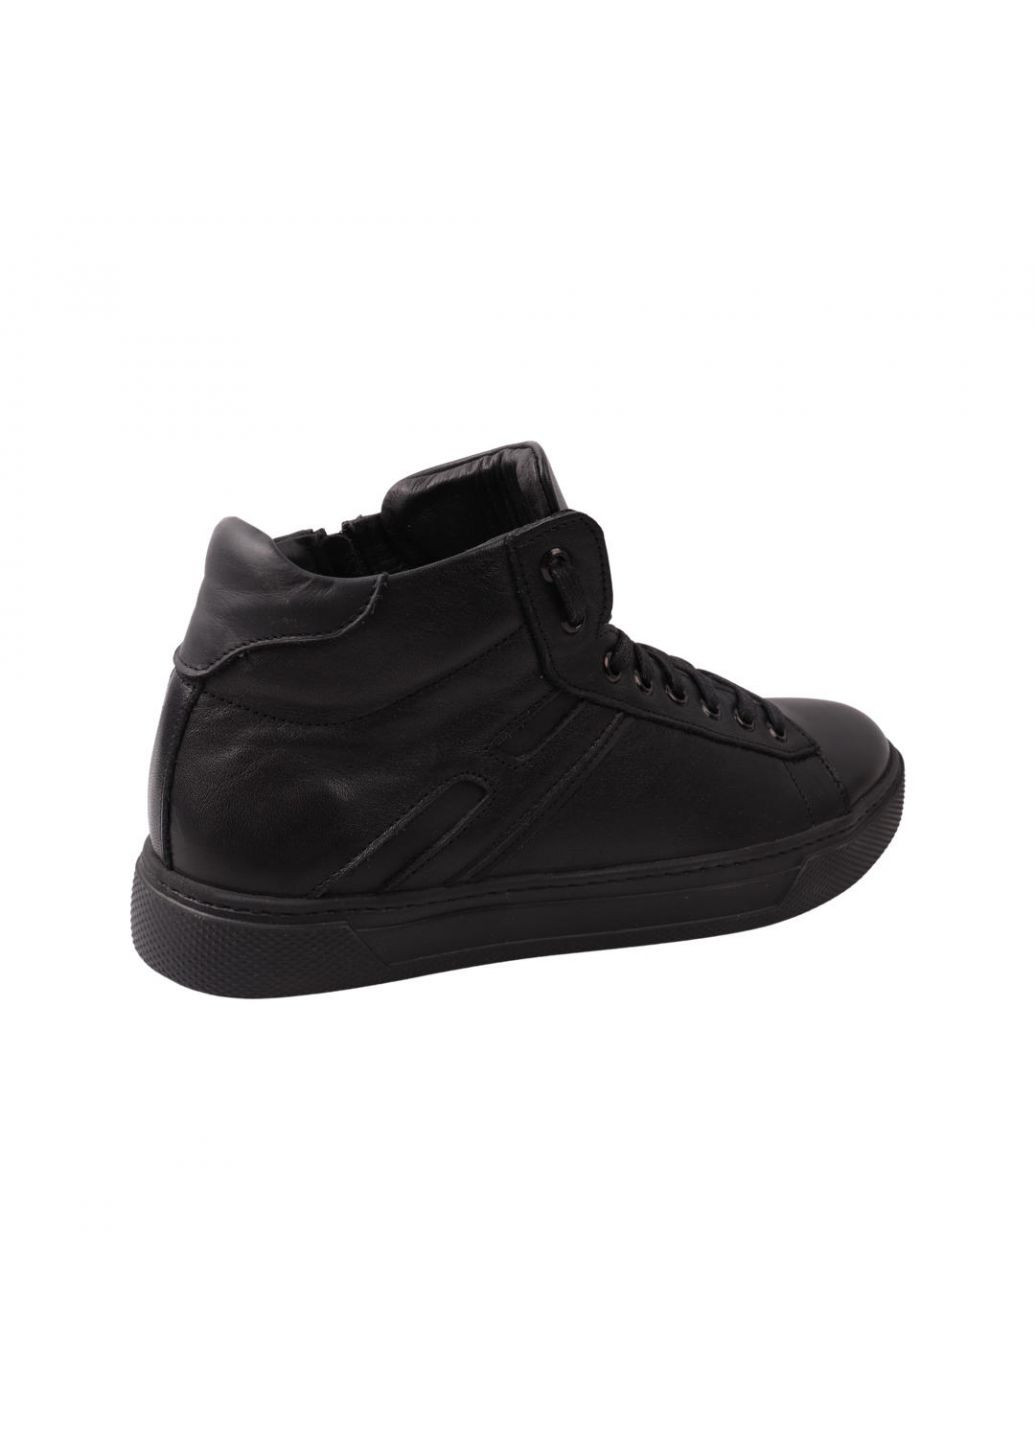 Черные ботинки мужские черные натуральная кожа Flamanti